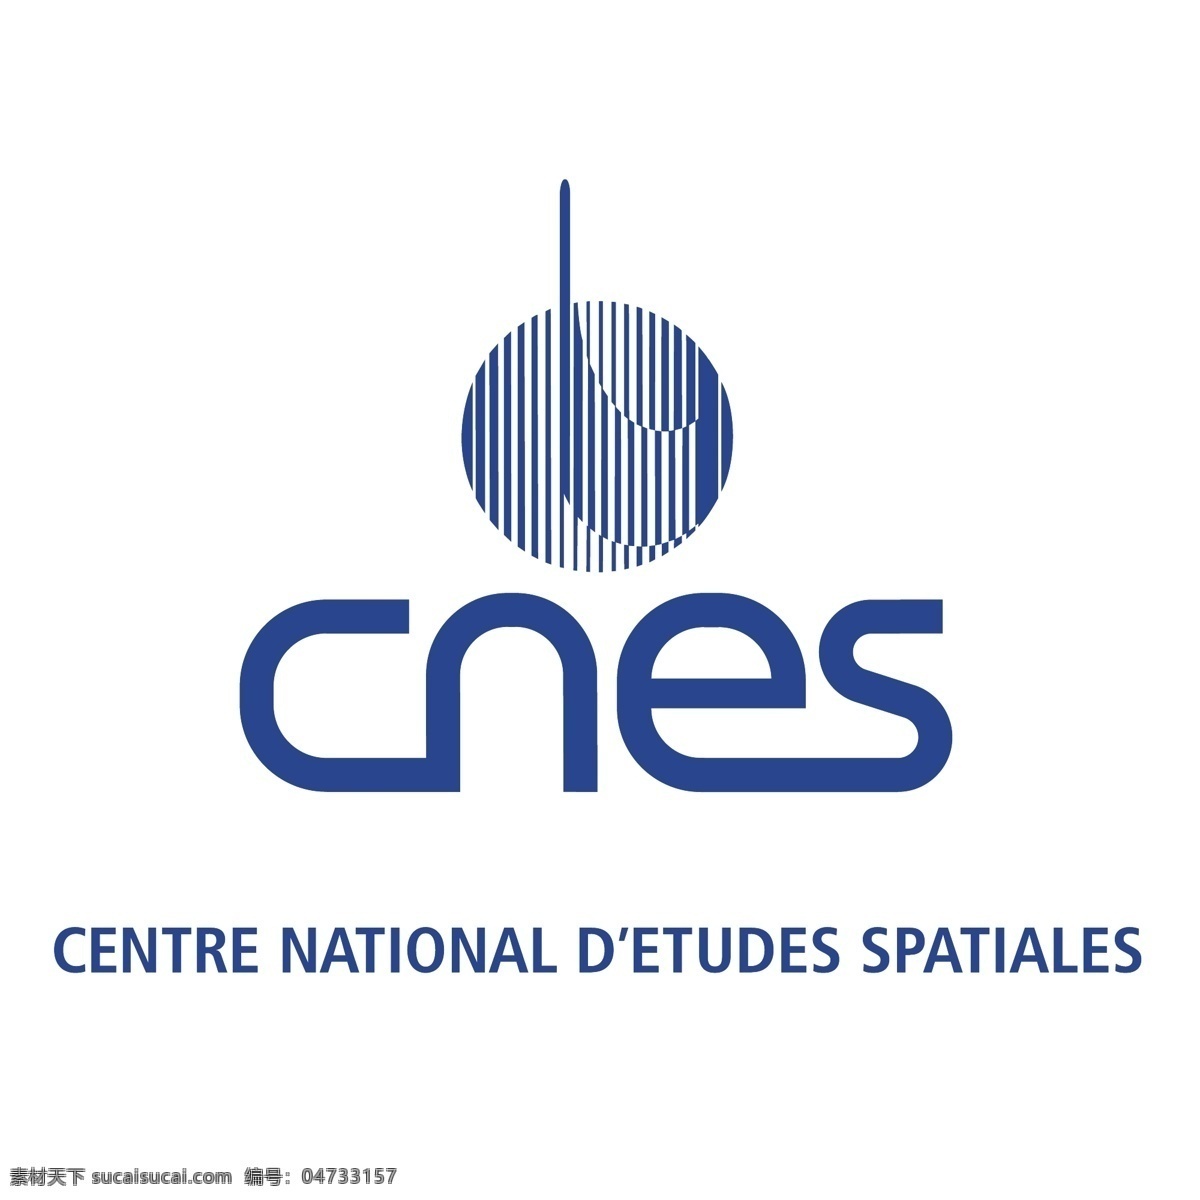 法国 国家 空间 研究中心 自由 标志 标识 中心 psd源文件 logo设计